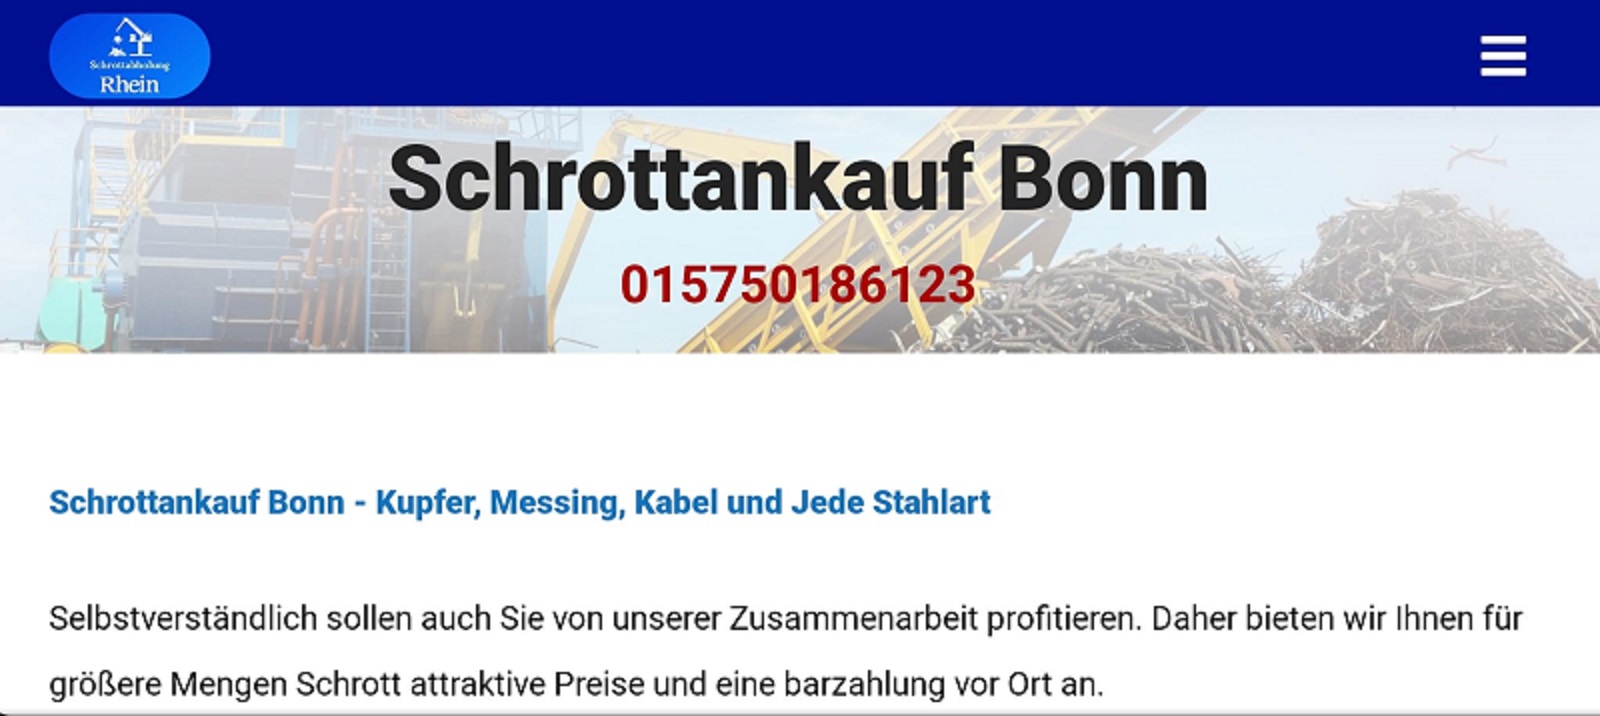 Schrottankauf Bonn-9d1bb571